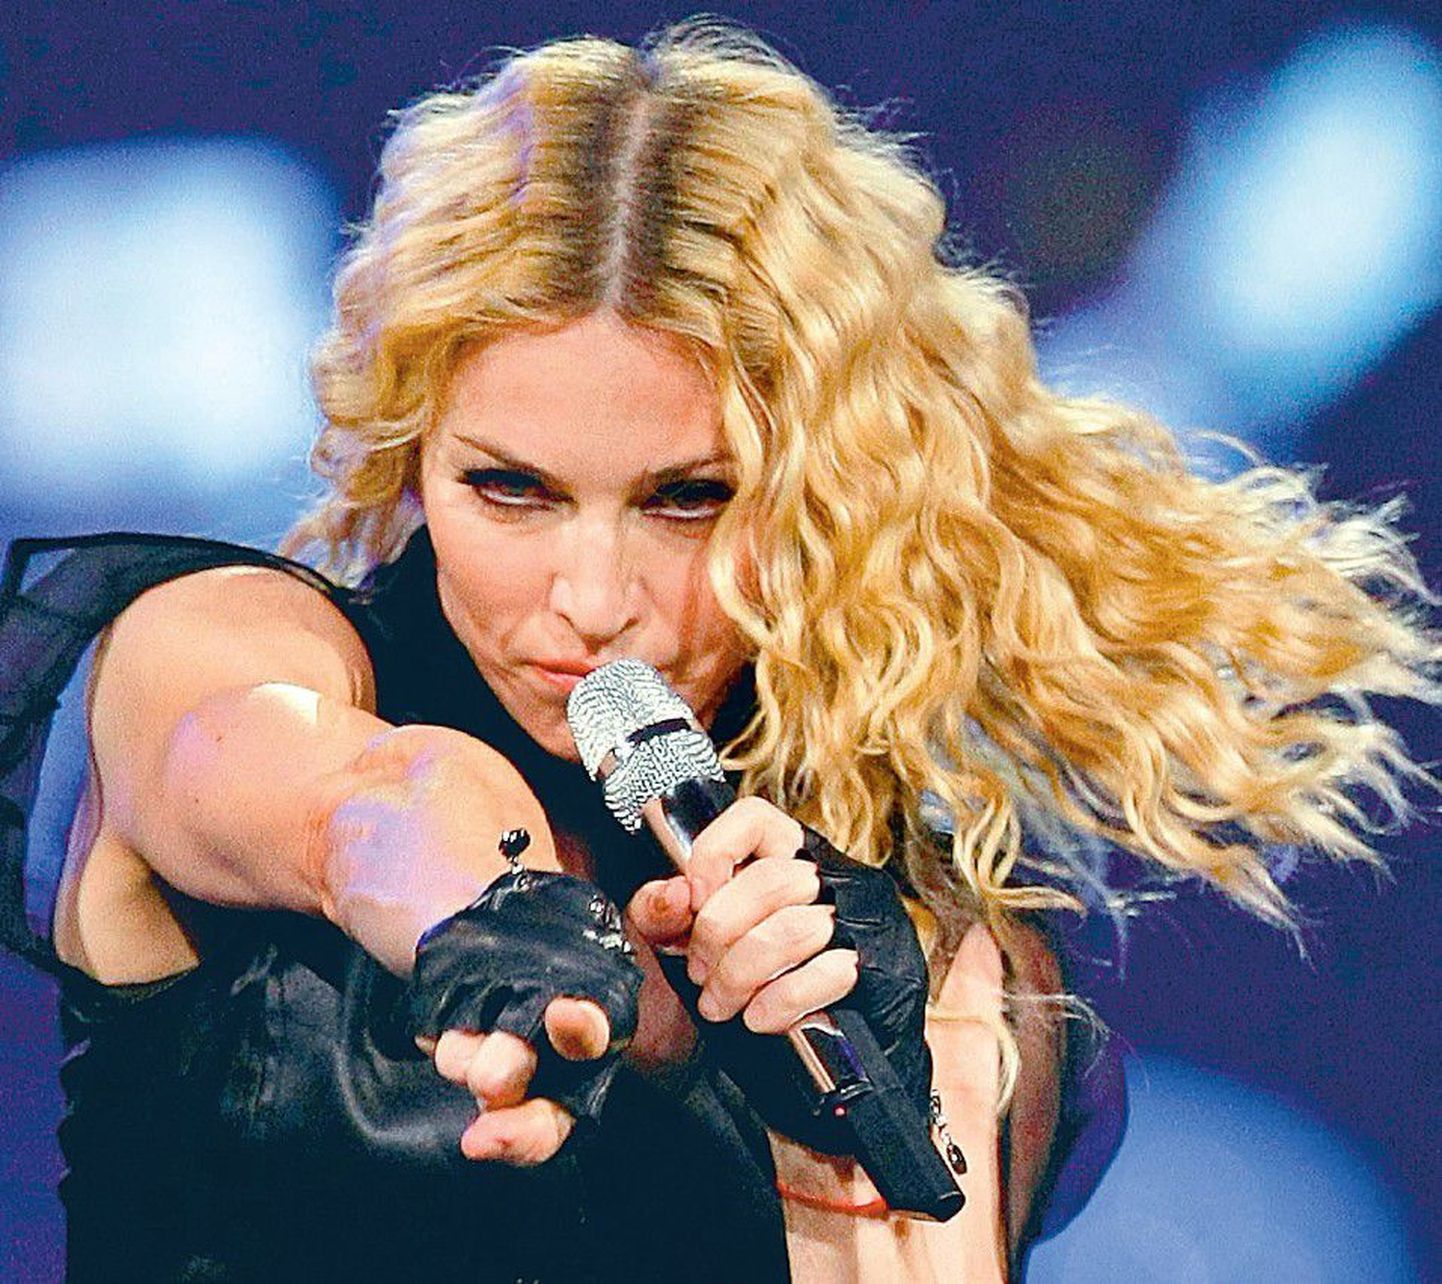 Madonna on viimase veerandsajandi kestel olnud üks meelelahutusmaailma tuntumaid ja märgatavamaid staare.